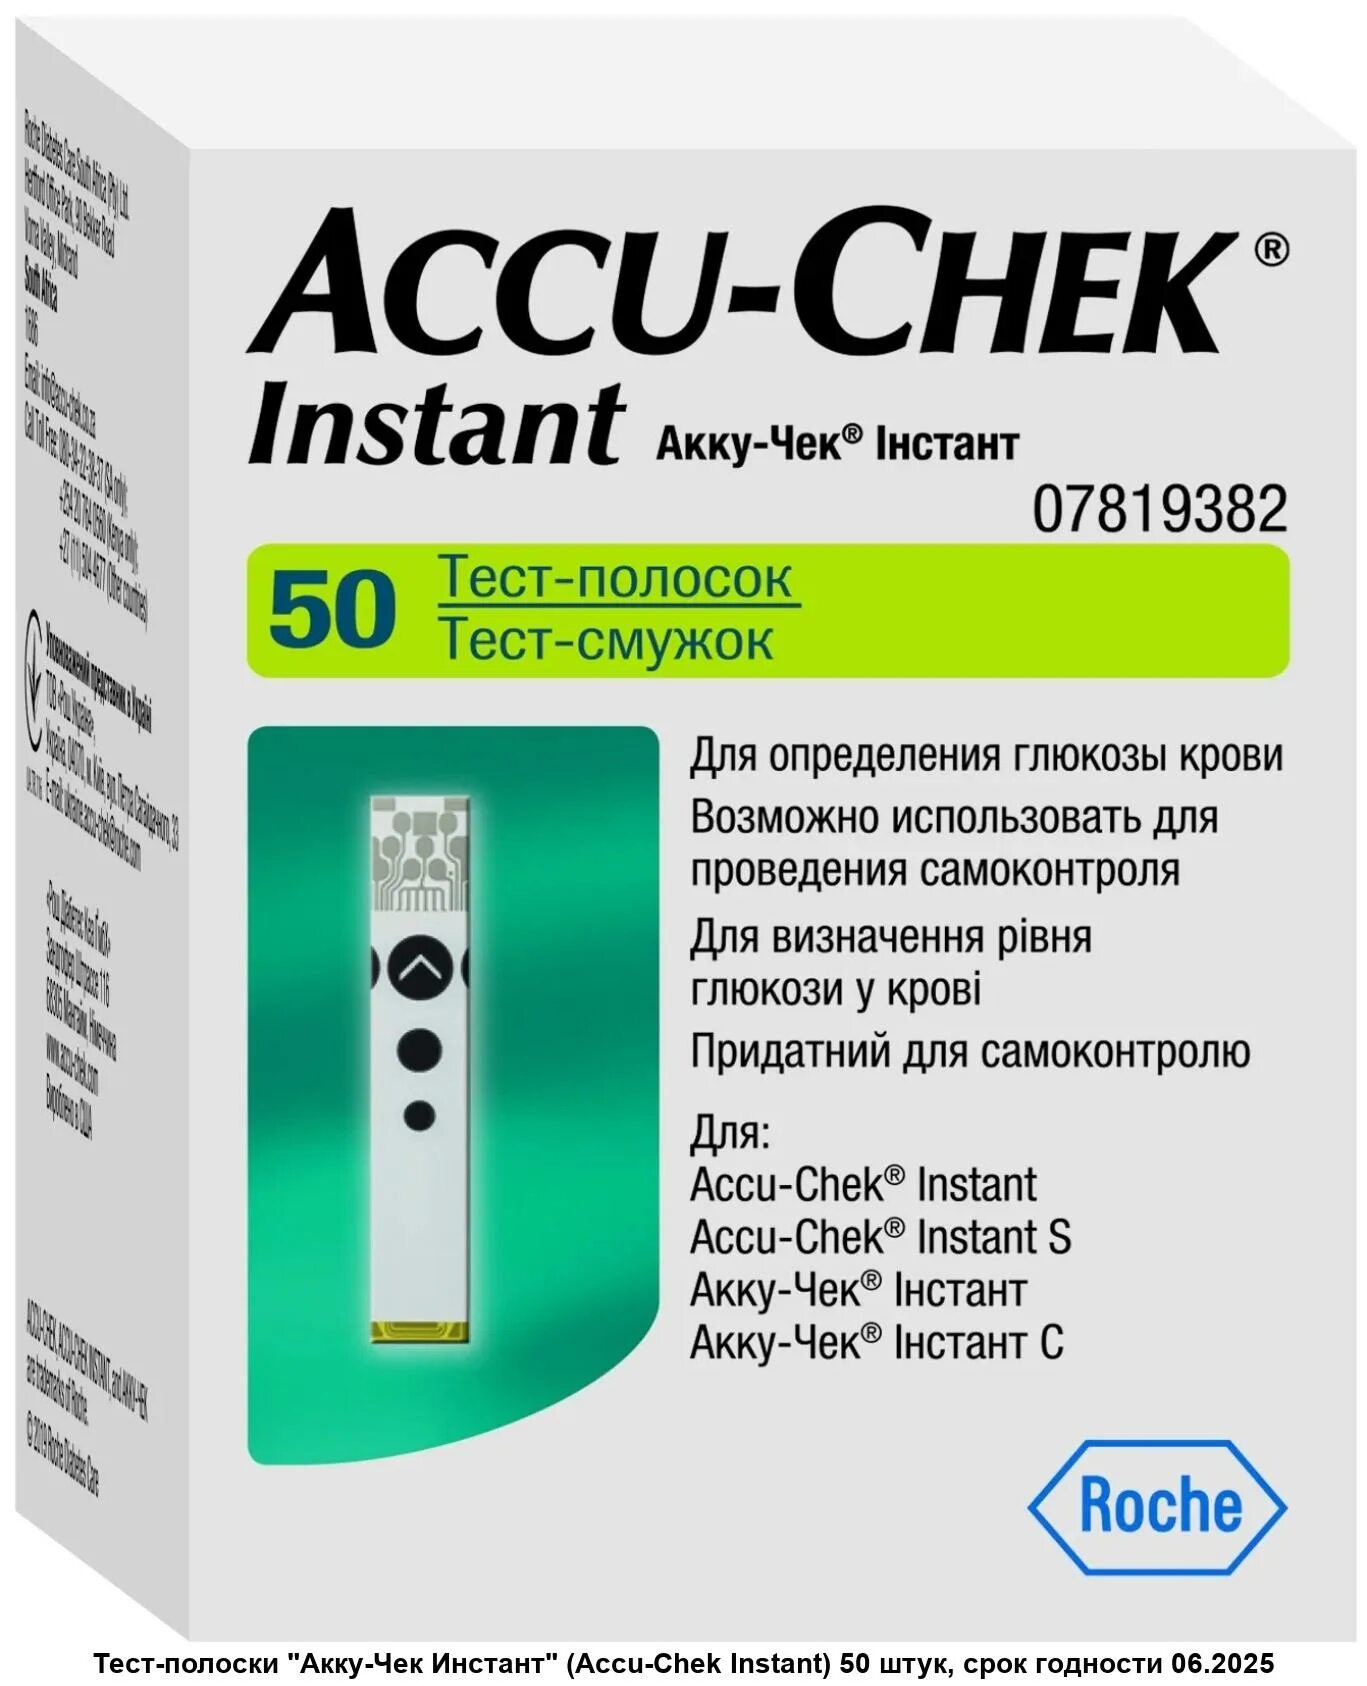 Купить акк на тест. Accu Chek instant полоски. Глюкометр "Accu-Chek instant" (Акку-чек инстант)+10 тест-полосок. Accu-Chek instant тест-полоски 50 шт. Глюкометр инстант Accu-Chek.